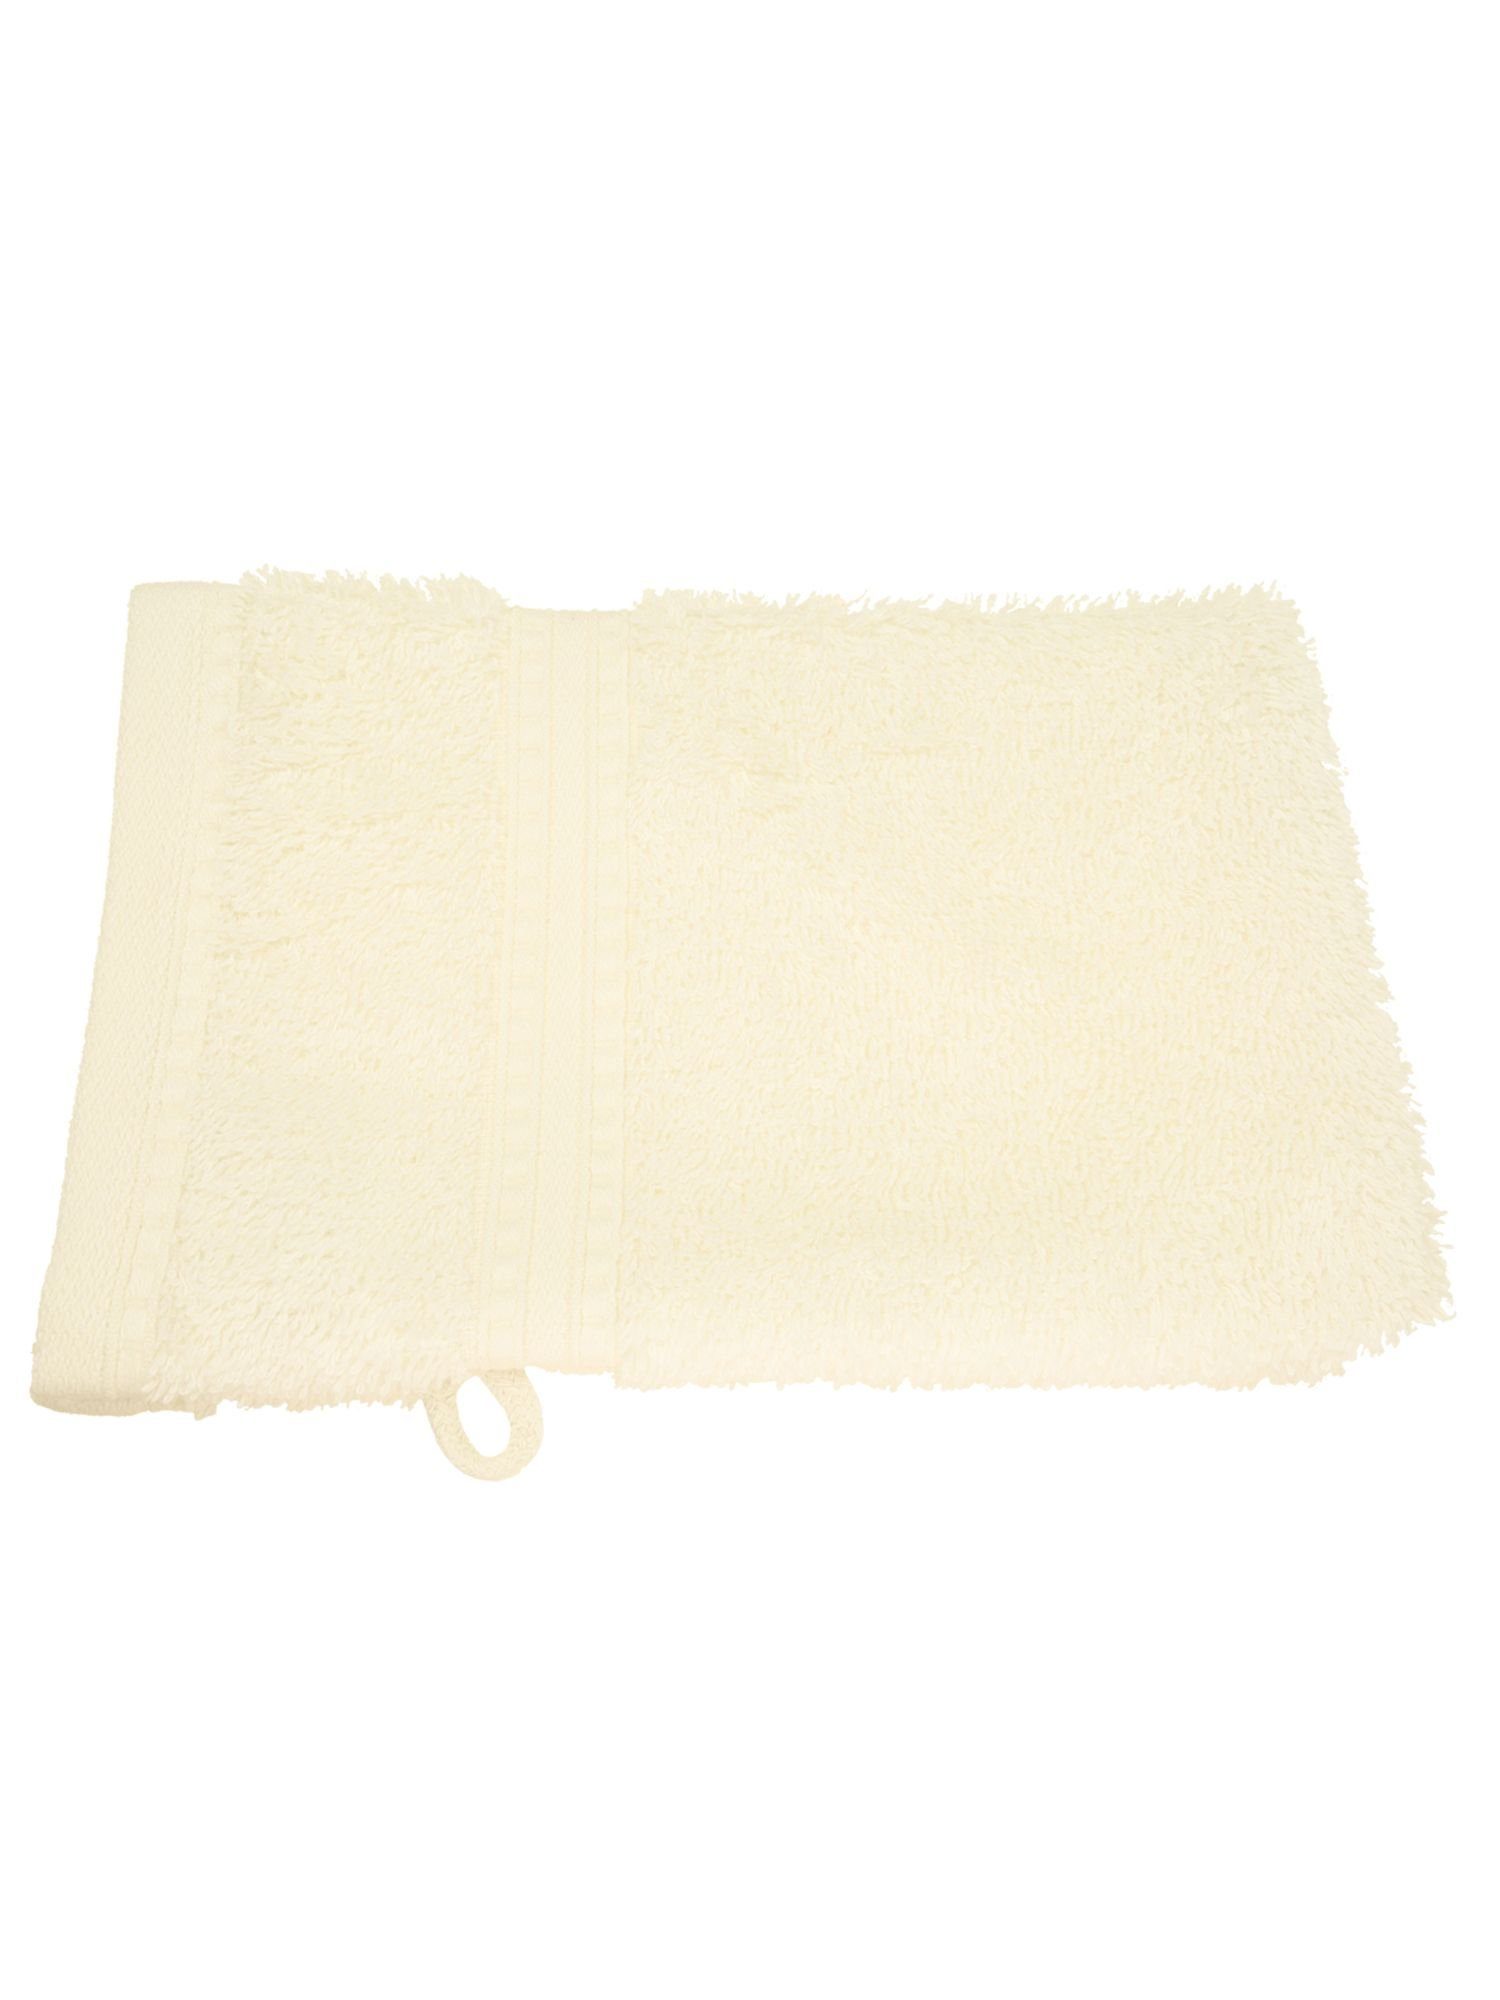 Julie Julsen Handtuch 15 1-Handtuch-Naturweiß-Waschhandschuh cm, Bio-Baumwolle 21 (1-St) x